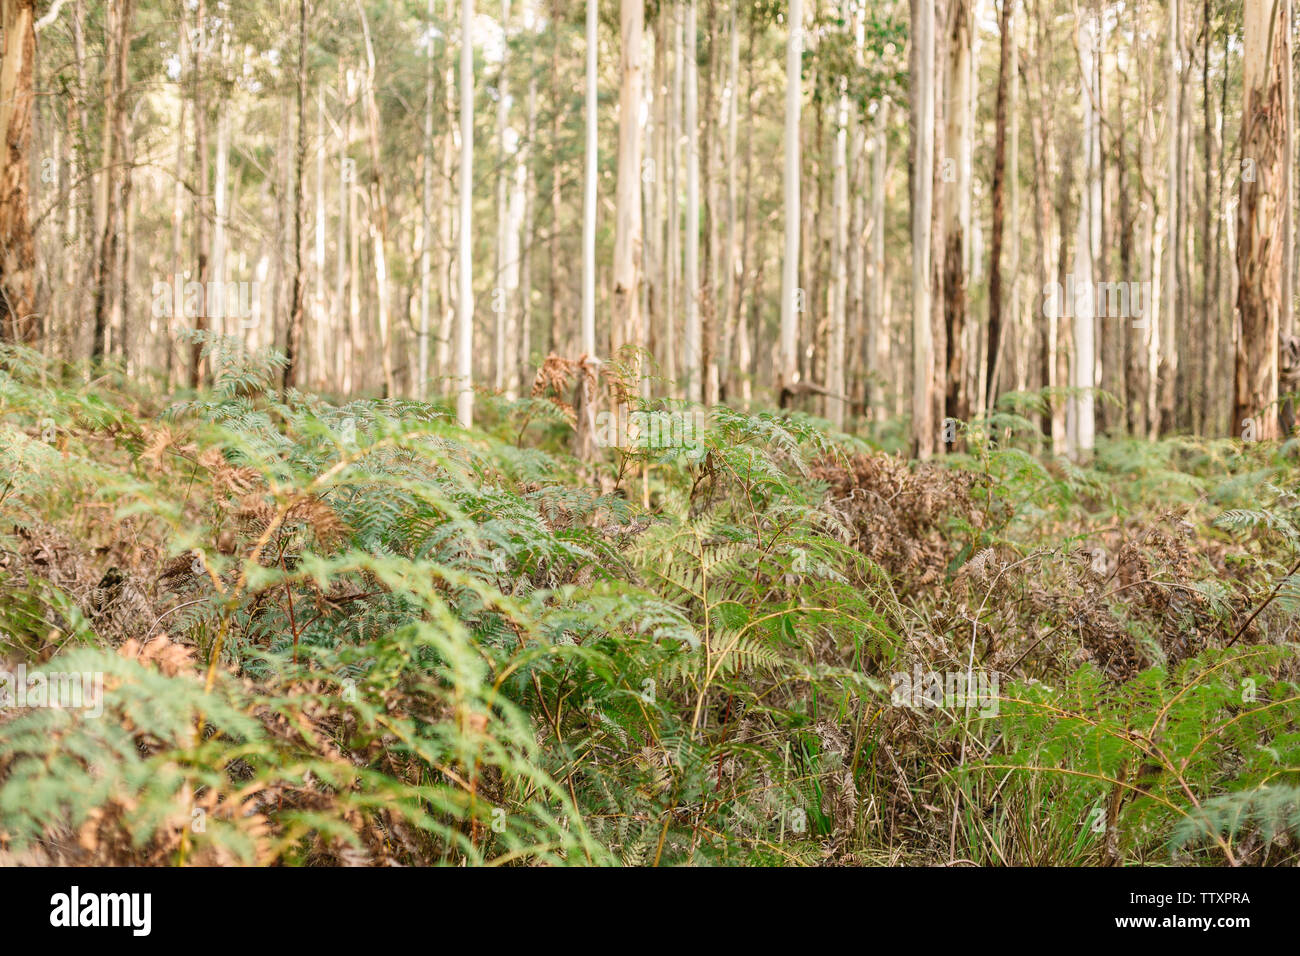 Bild in einem Wald mit einer Nahaufnahme von Farnen und dichten Bäumen im Hintergrund Stockfoto